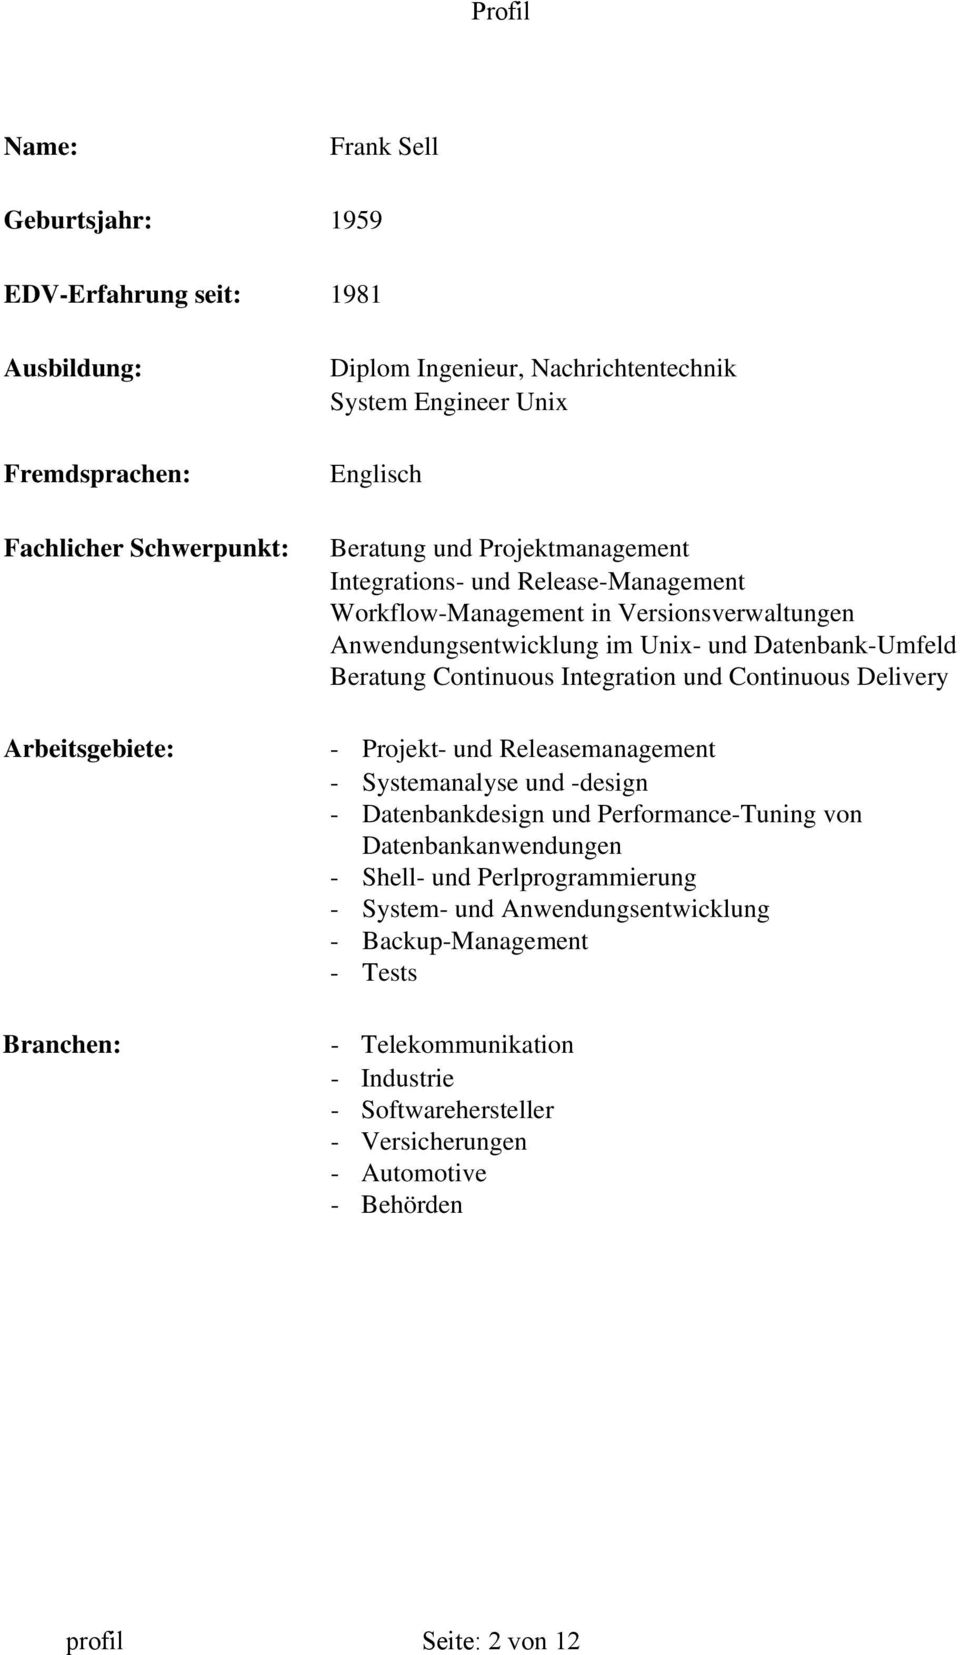 Continuous Delivery Arbeitsgebiete: - Projekt- und Releasemanagement - Systemanalyse und -design - Datenbankdesign und Performance-Tuning von Datenbankanwendungen - Shell- und